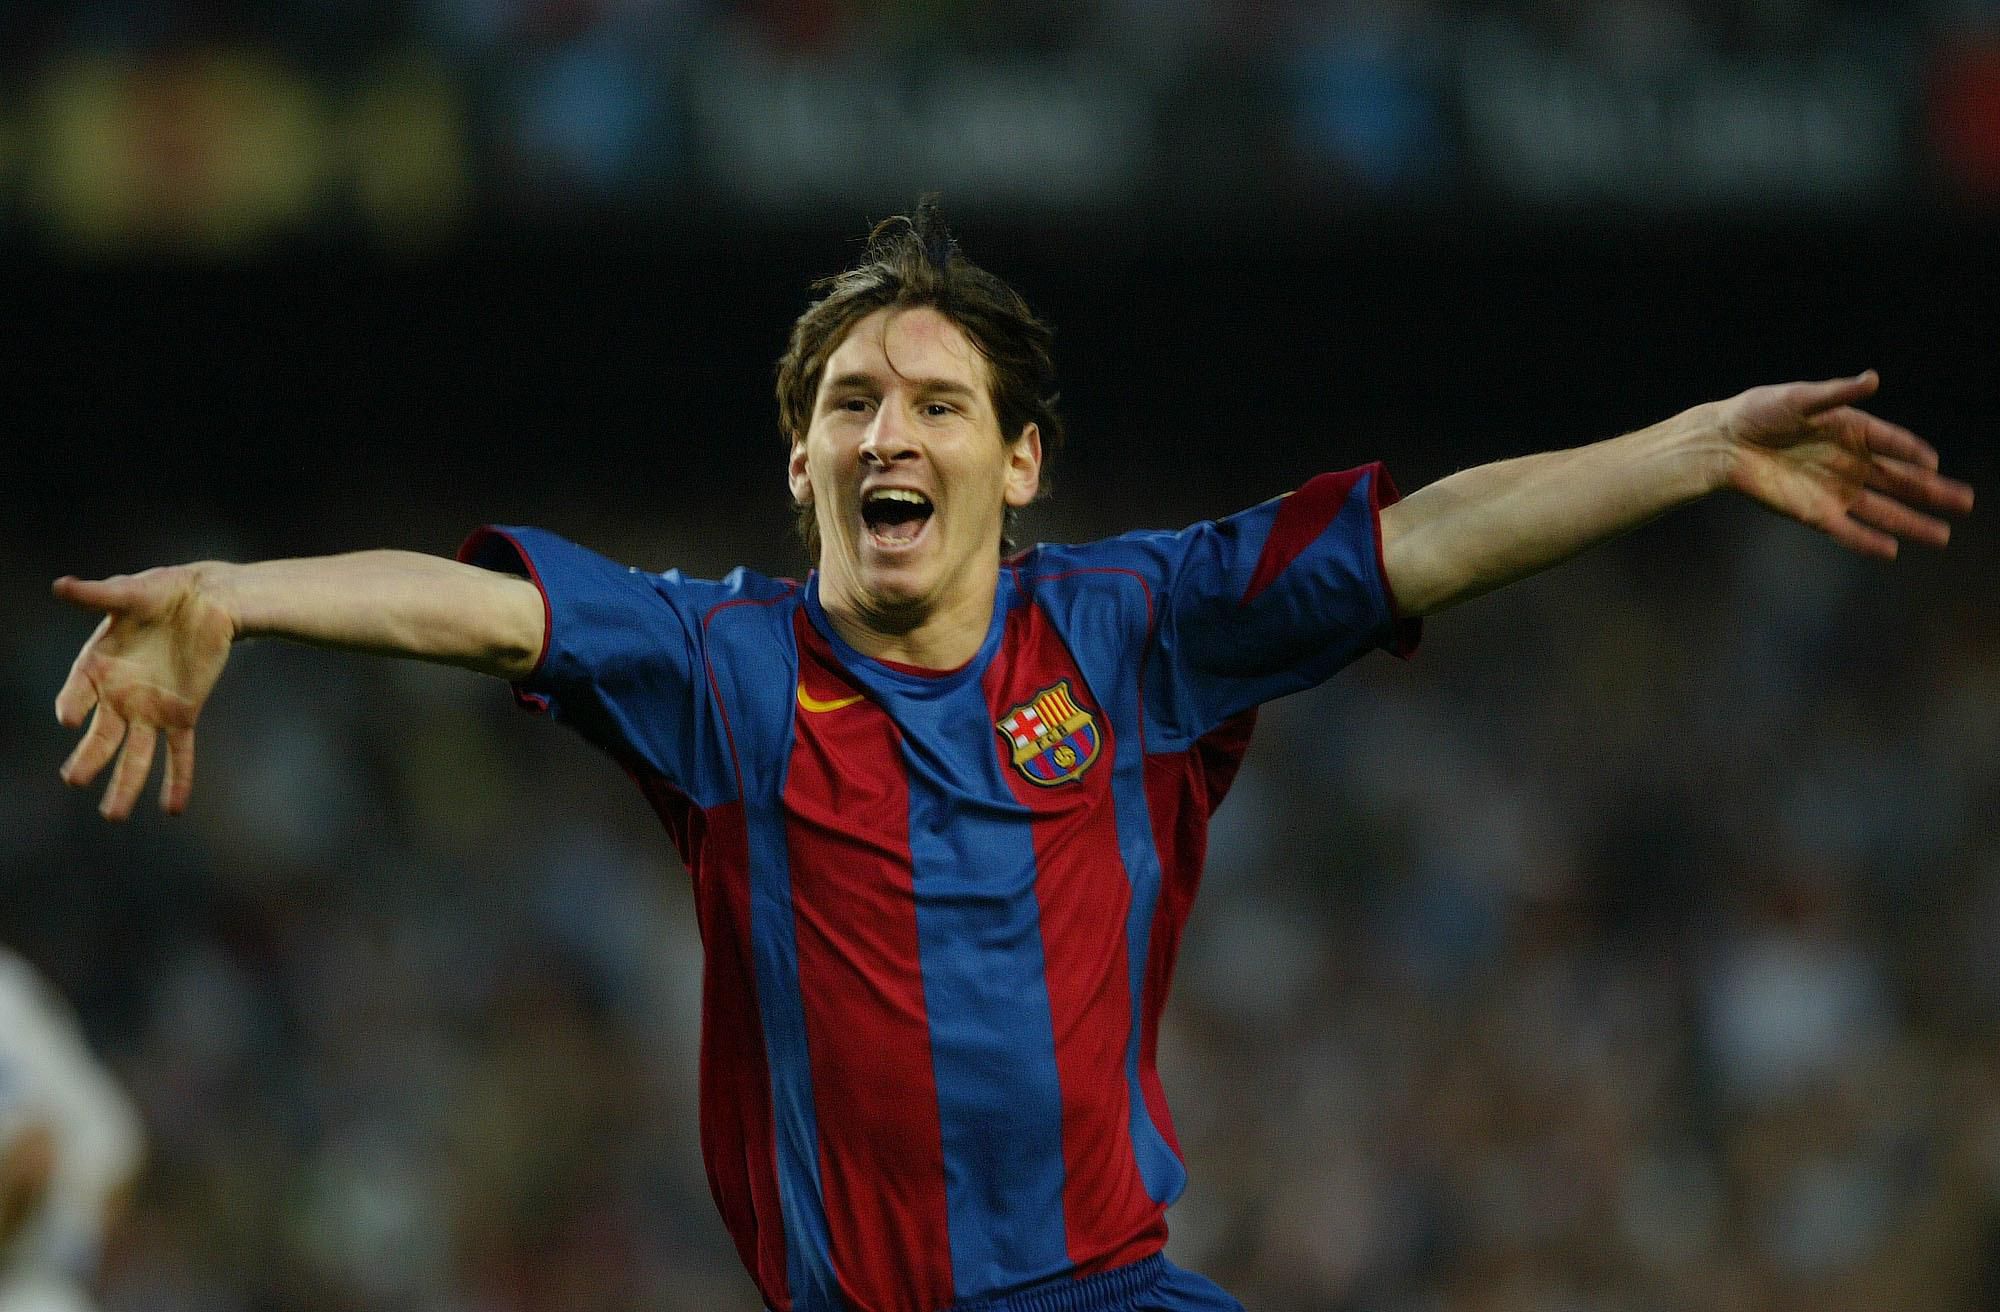 Lionel Messi strieľa svoj prvý gól za FC Barcelona. Prihrával mu Ronaldinho.